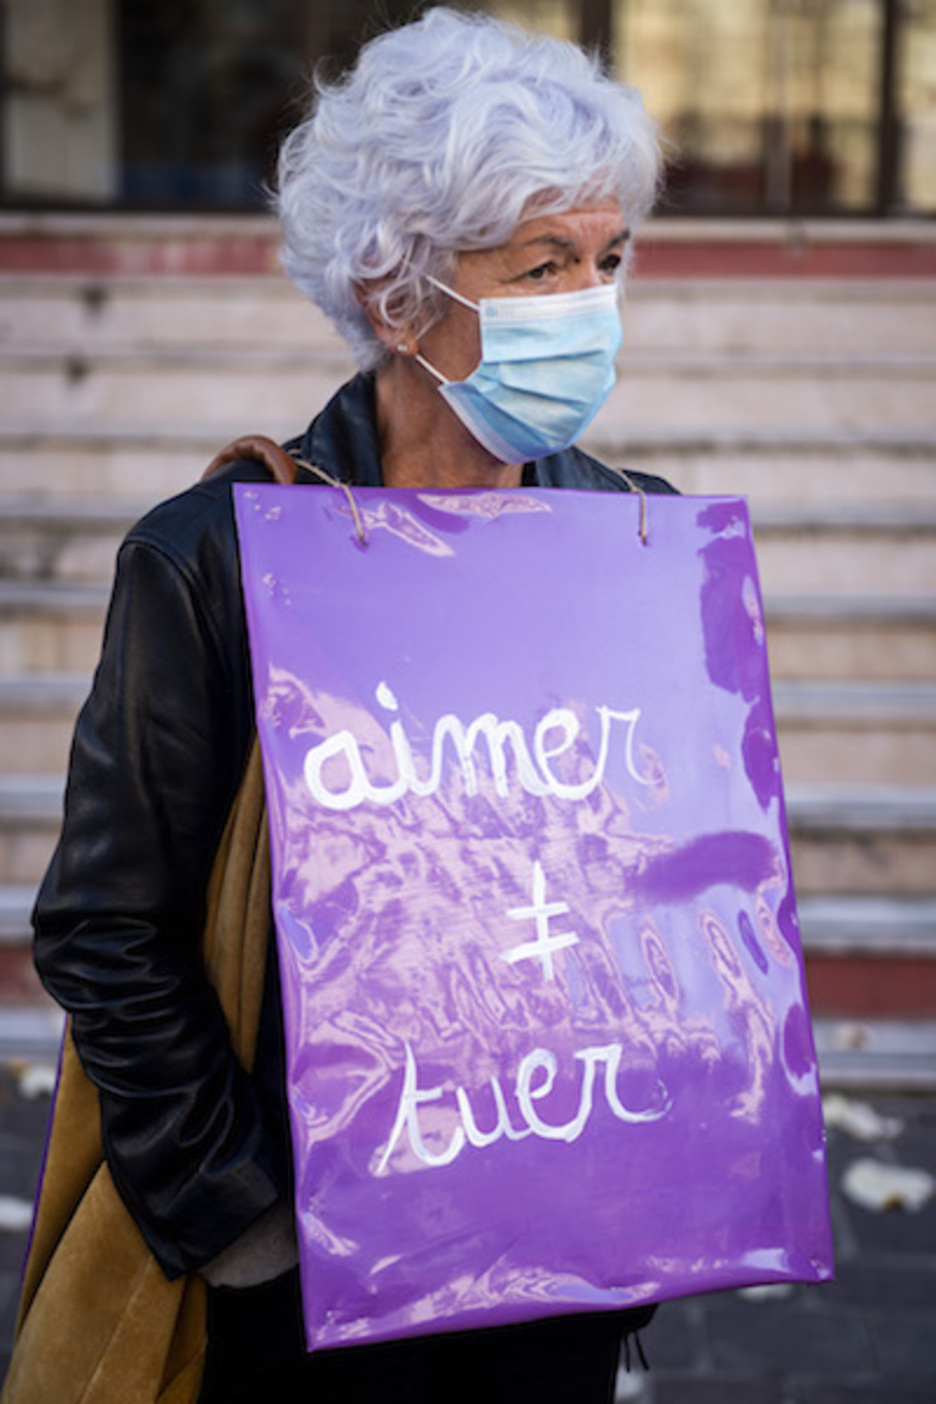 Les participants à la mobilisation à Hendaye portaient du noir (symbole de deuil) et du violet (symbole de la lutte féministe). © Guillaume Fauveau